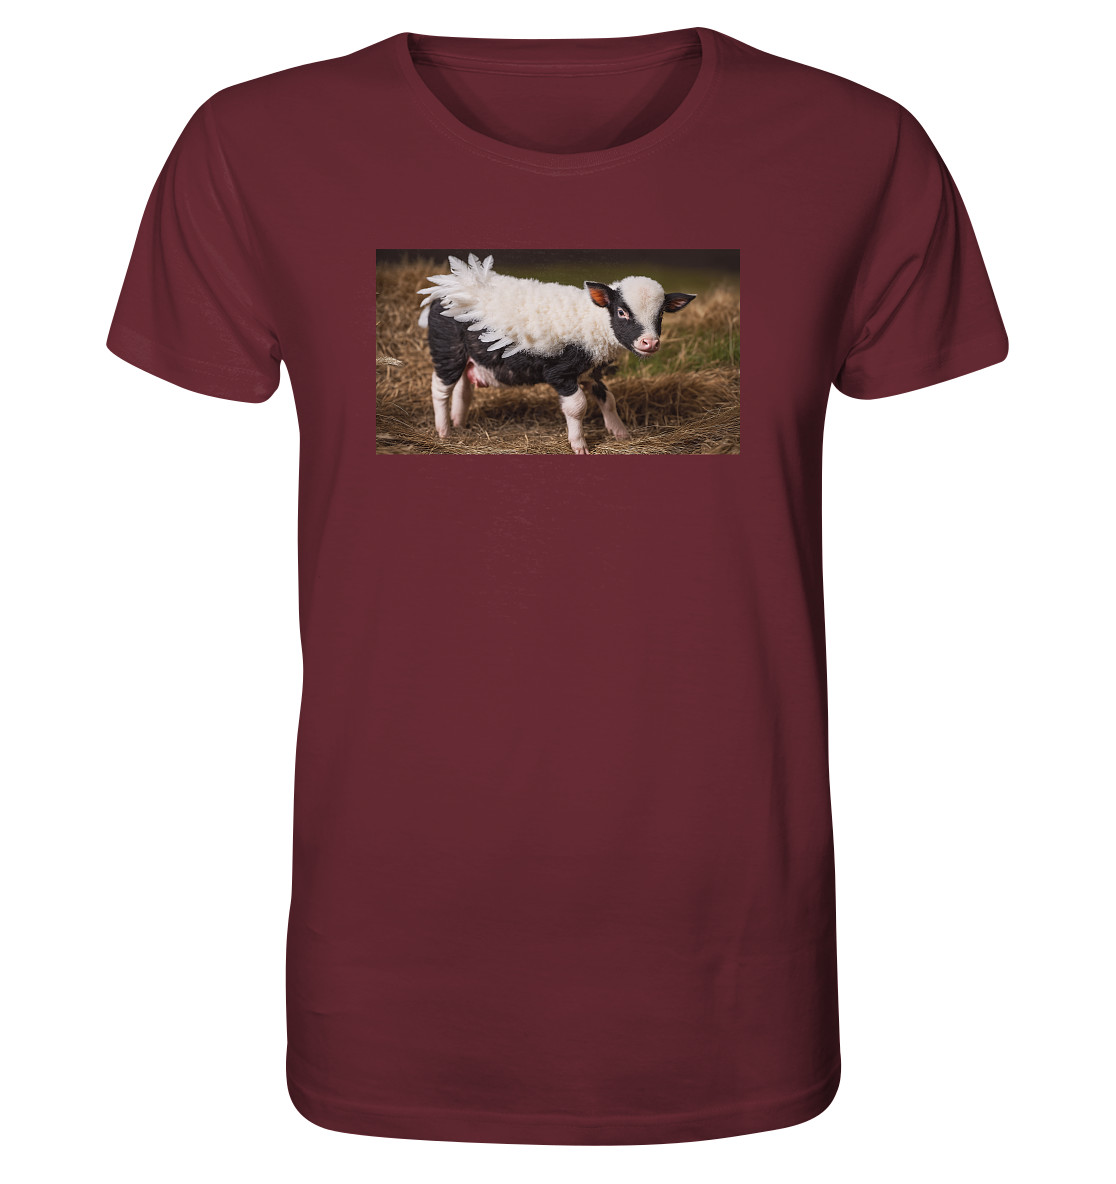 front-organic-shirt-672b34-1116x-18.jpg